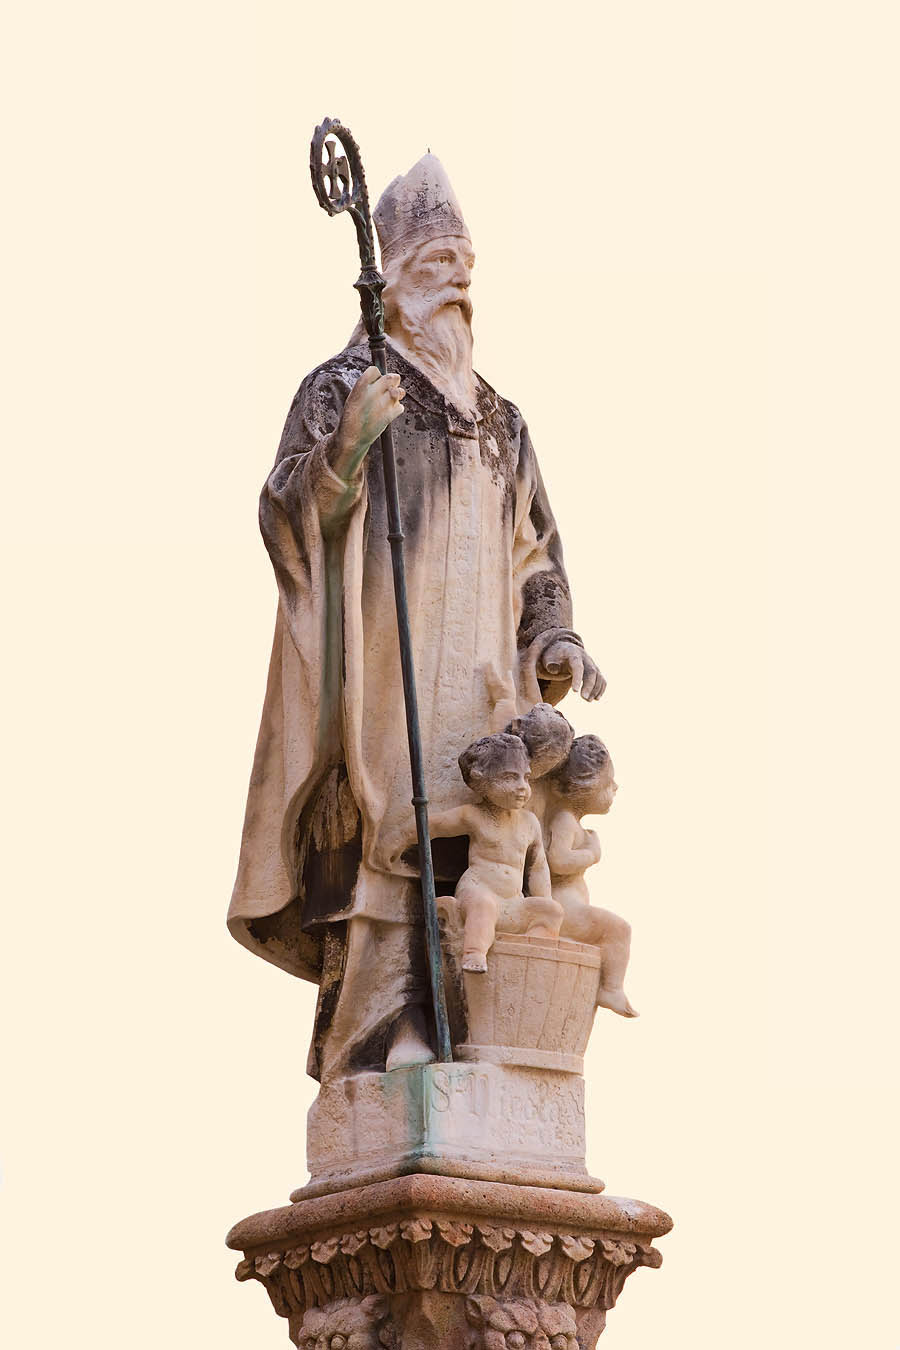 Opera di Bassignani, la statua di San Nicola, protettore dei pescatori e dei bambini, e patrono del Principato di Monaco con Santa Devota, sormonta la fontana dell'omonima piazza a Monaco-Ville.